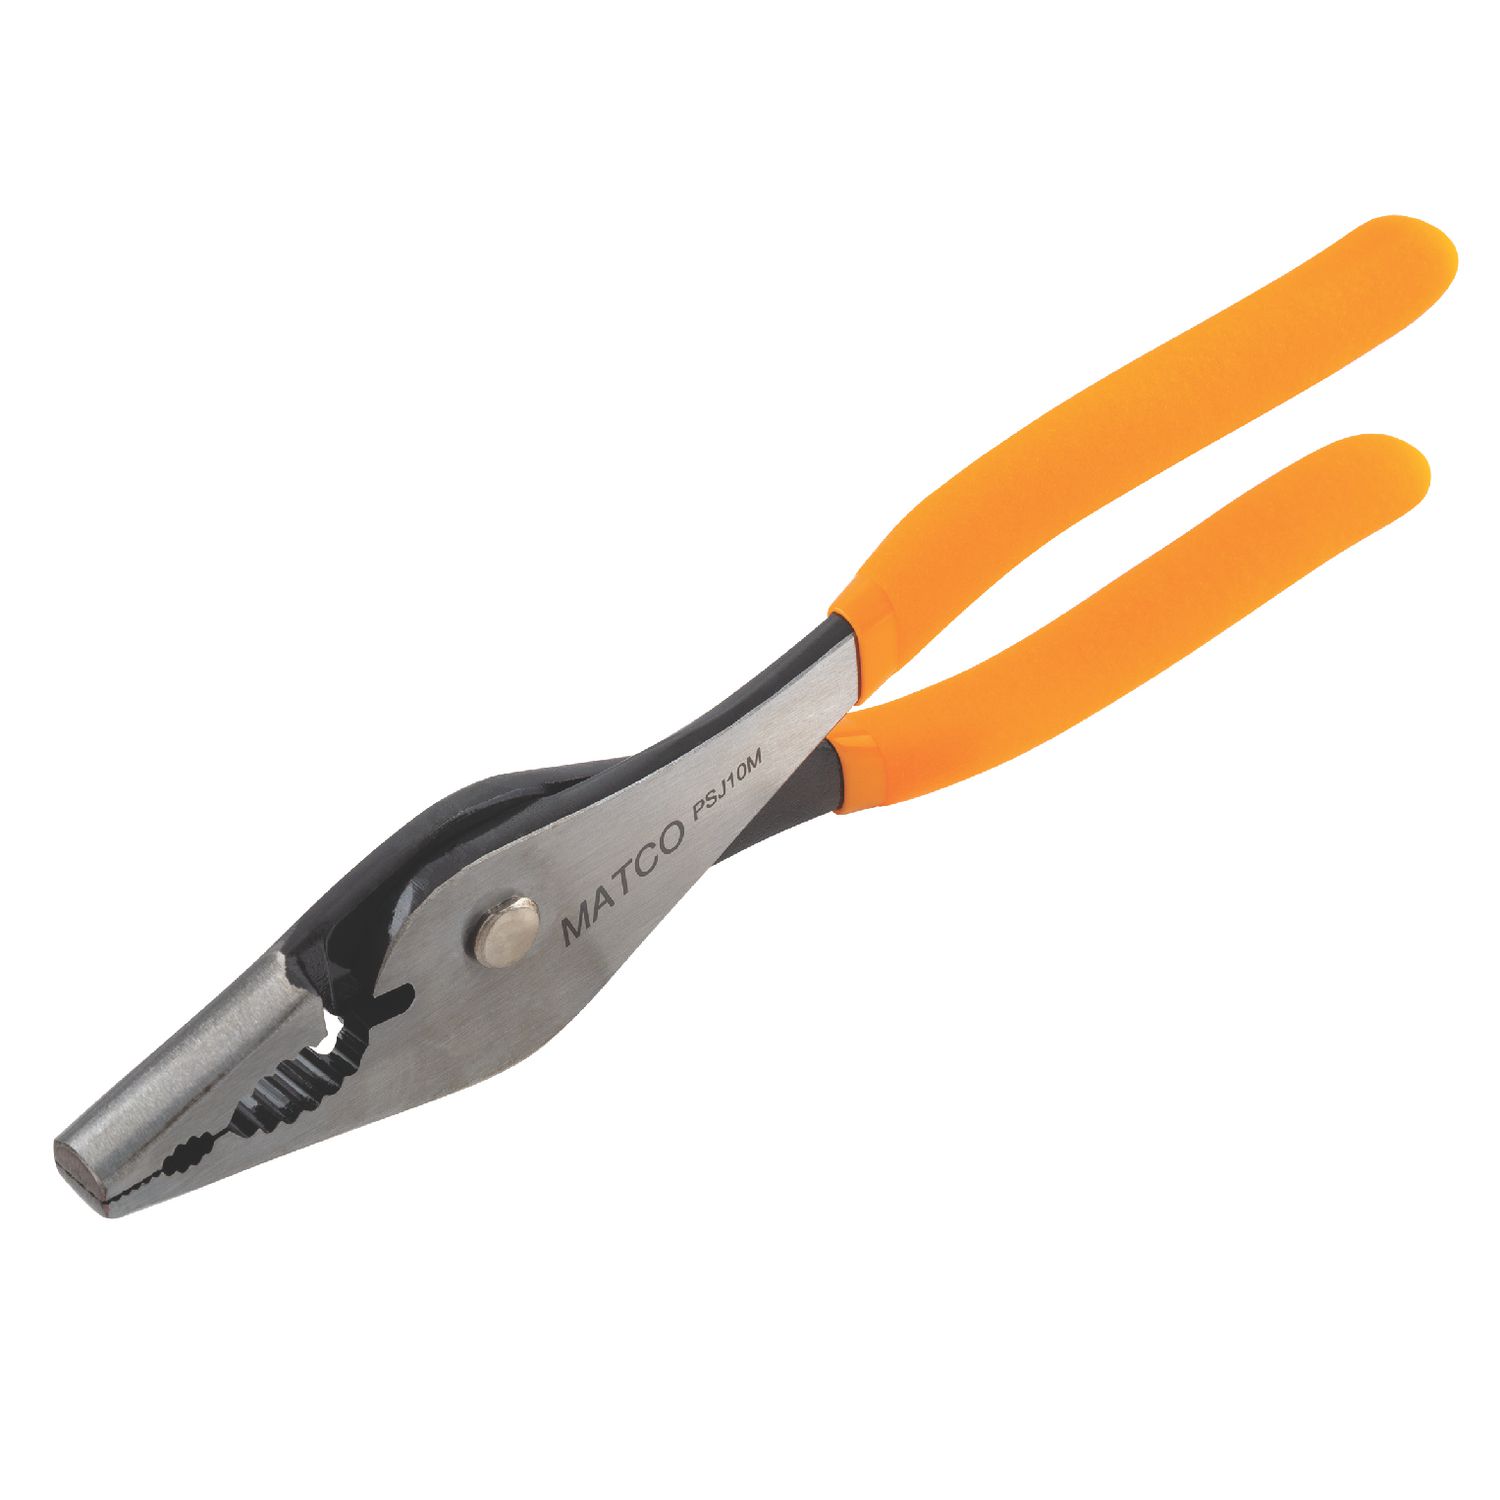 3 Piece Slip Joint Pliers Set PL3S | Matco Tools